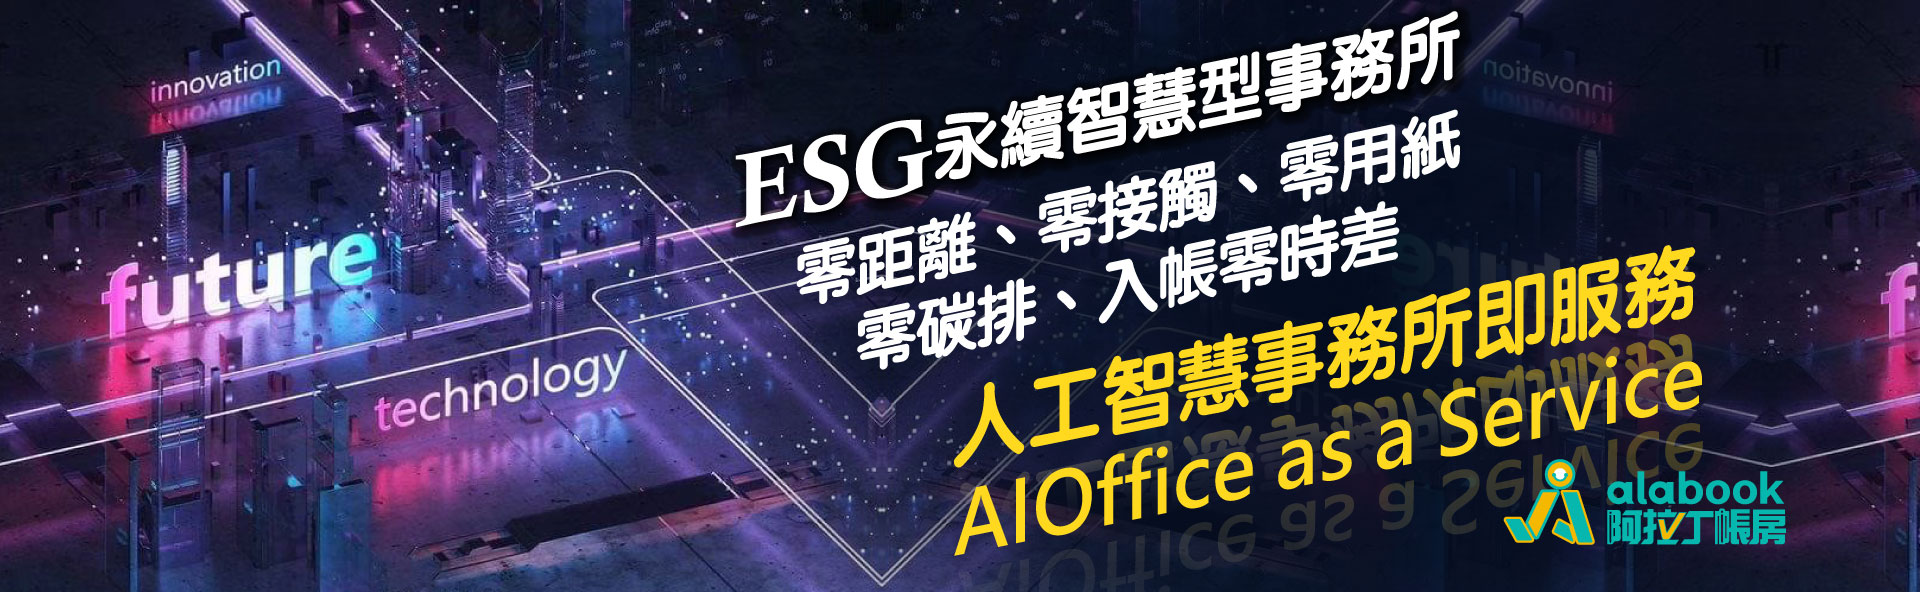 041.esg永續智慧型事務所AIOffice-as-a-service-1920x590-2